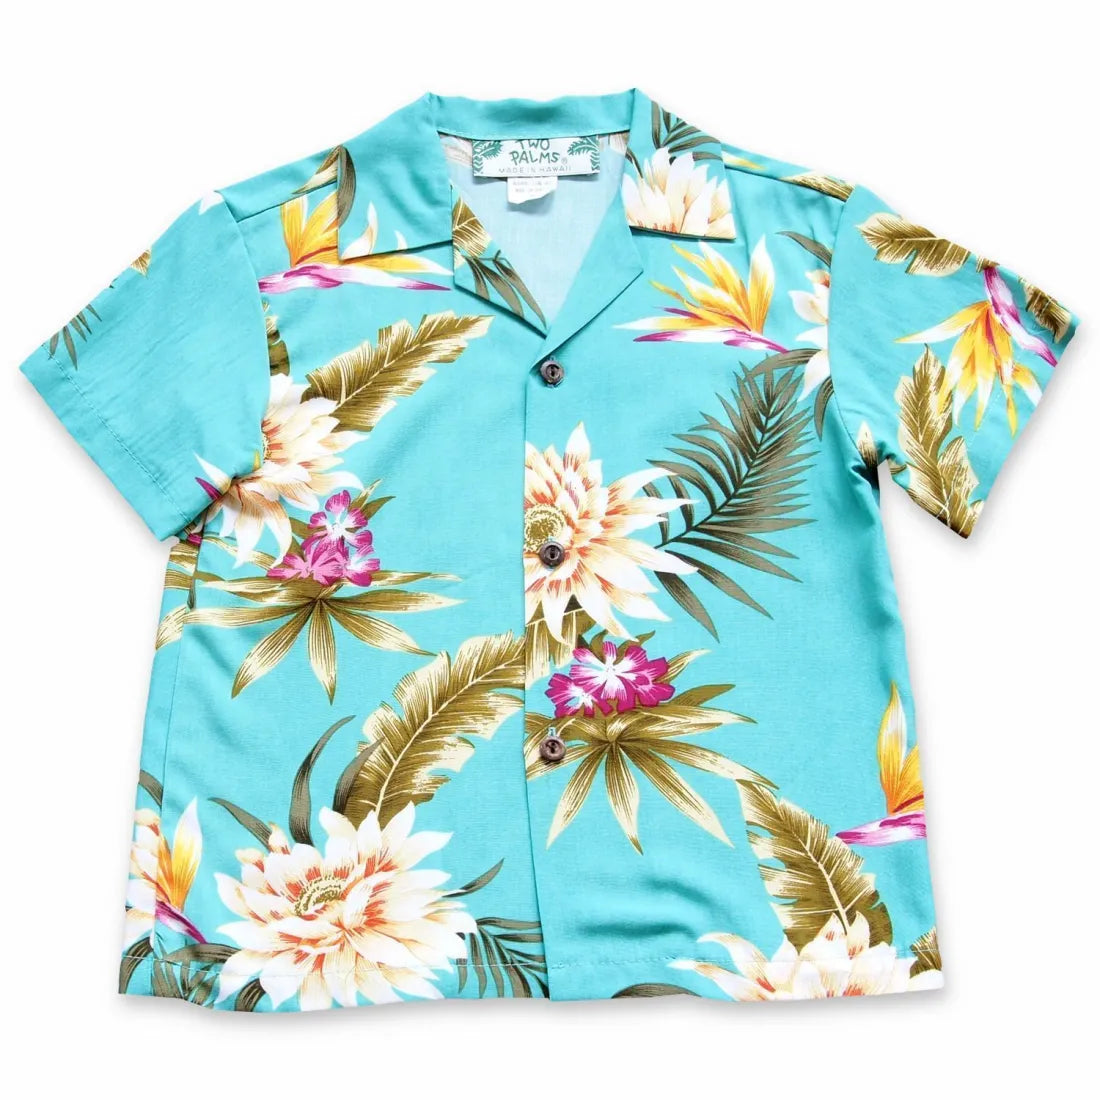 Mountain Green Hawaiian Boy Shirt - Made In Hawaii